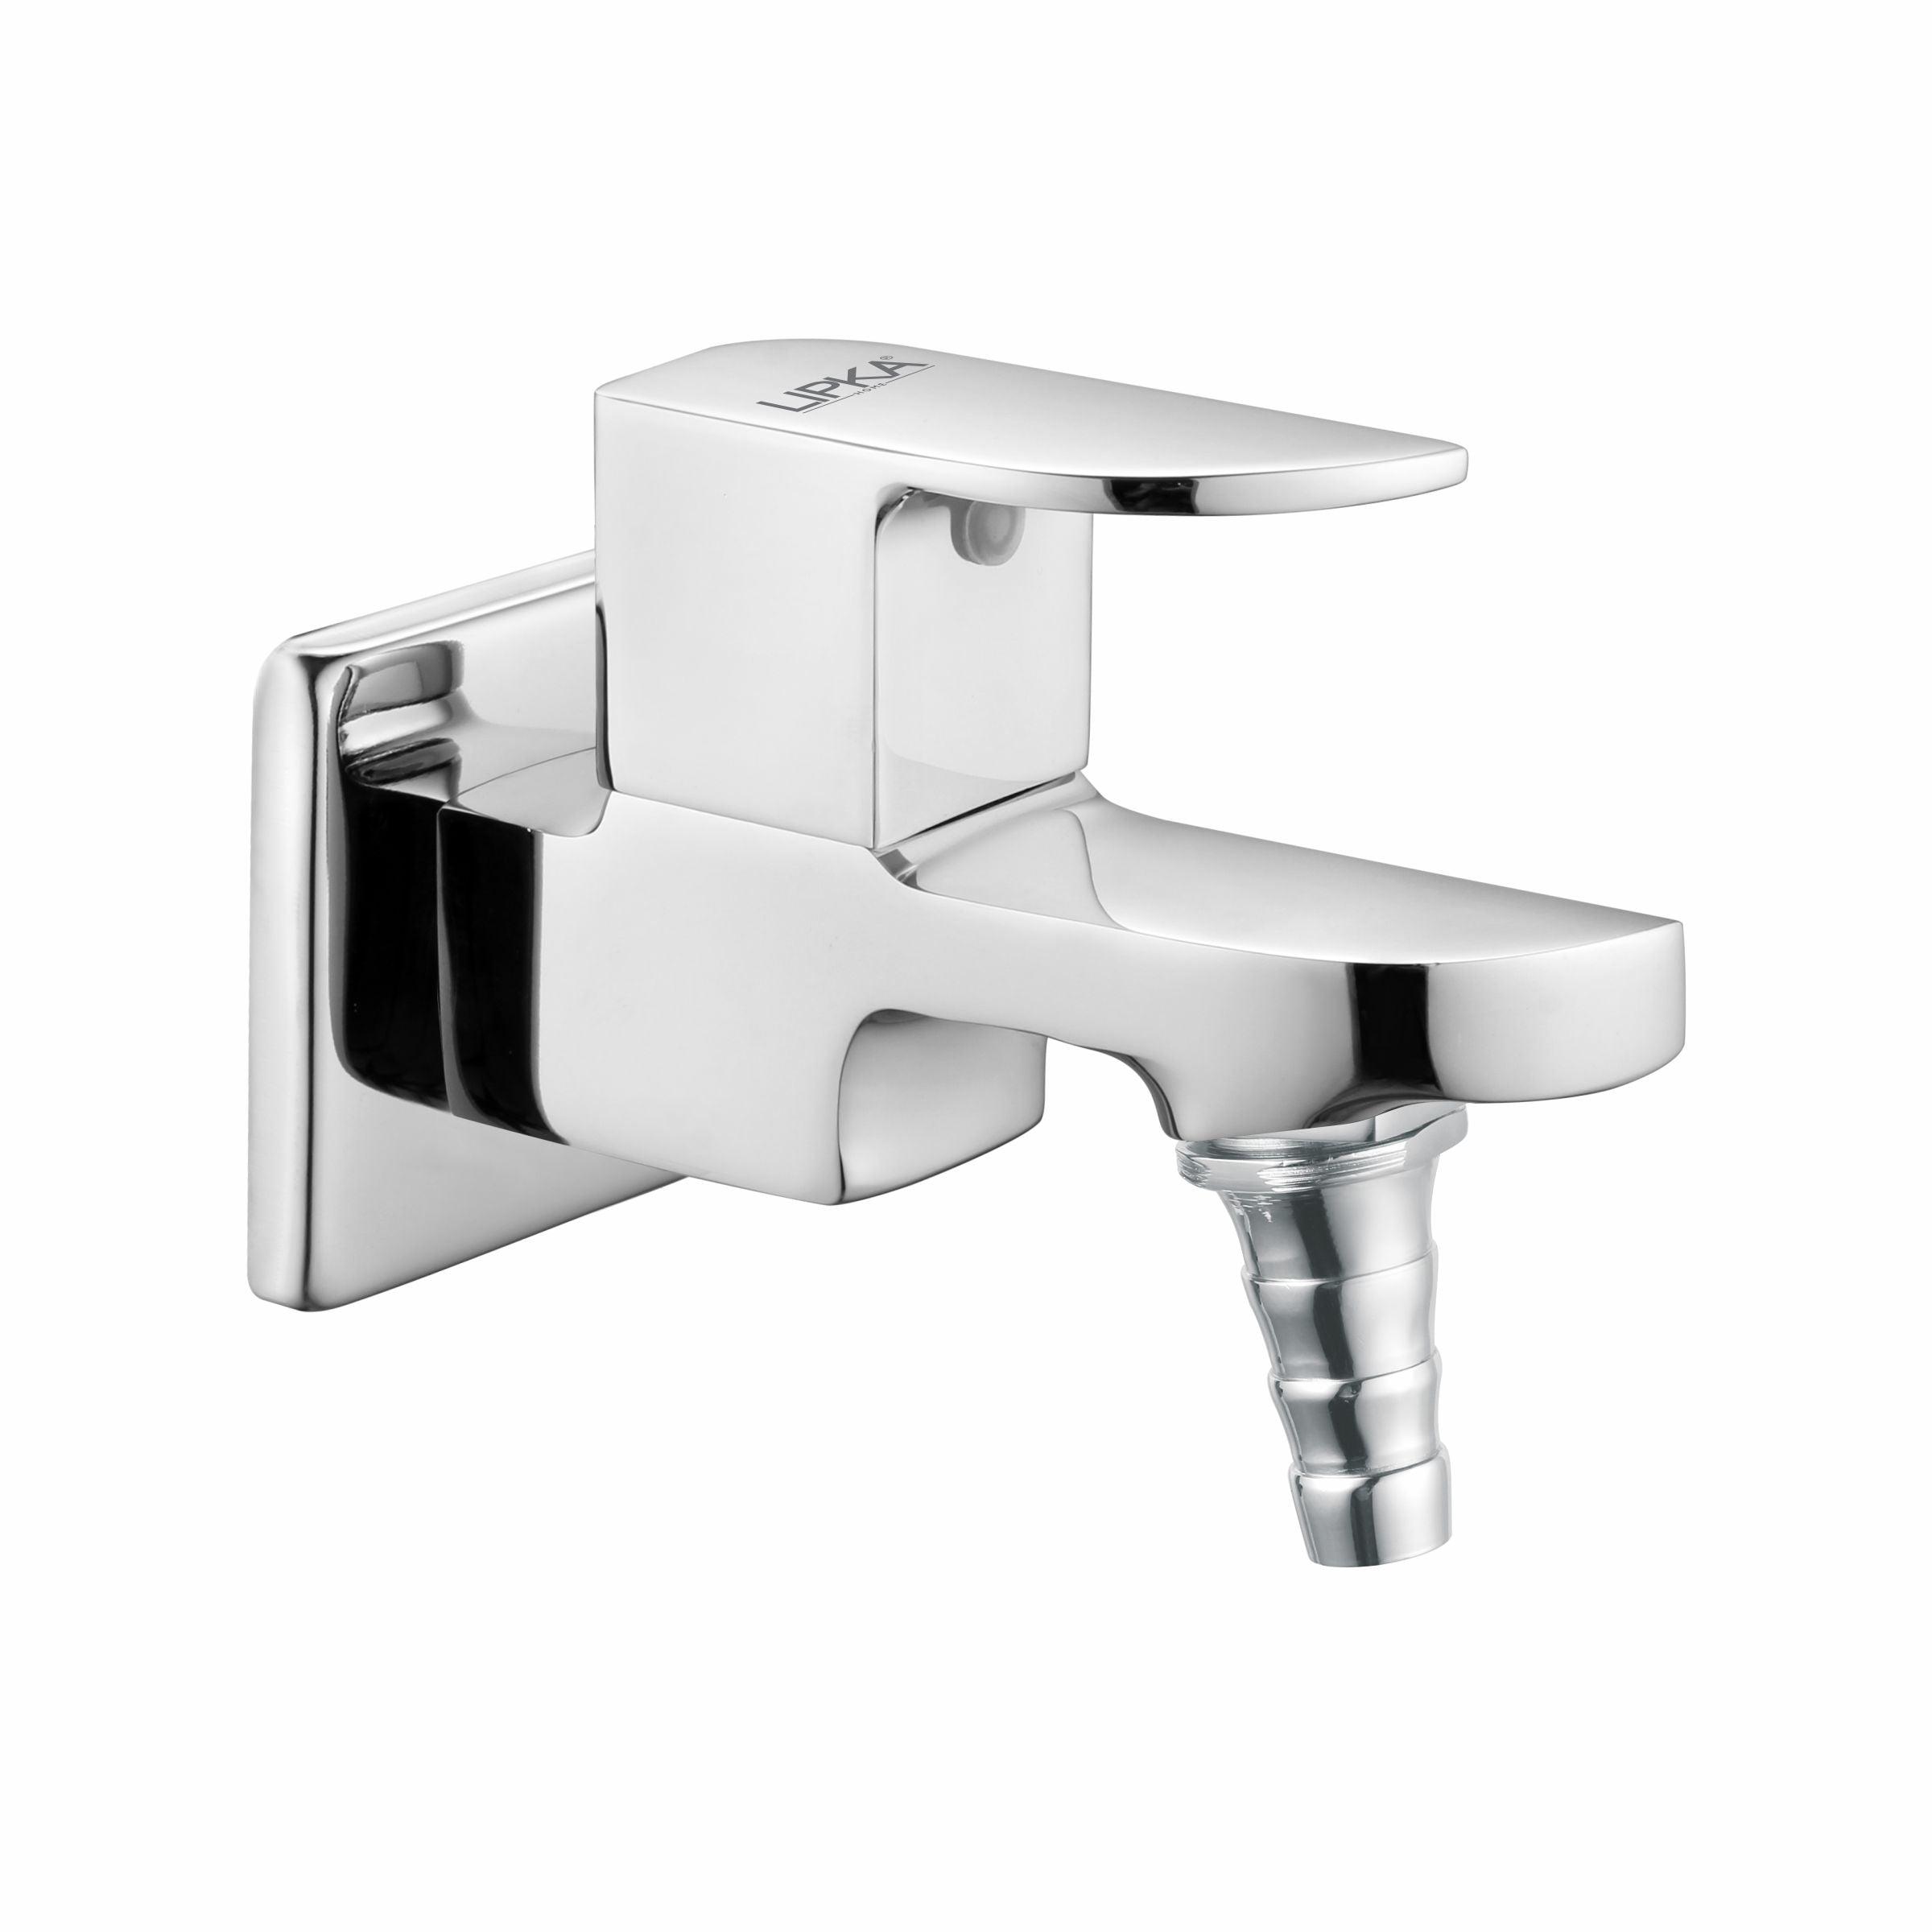 Arise Nozzle Bib Tap Brass Faucet - LIPKA - Lipka Home